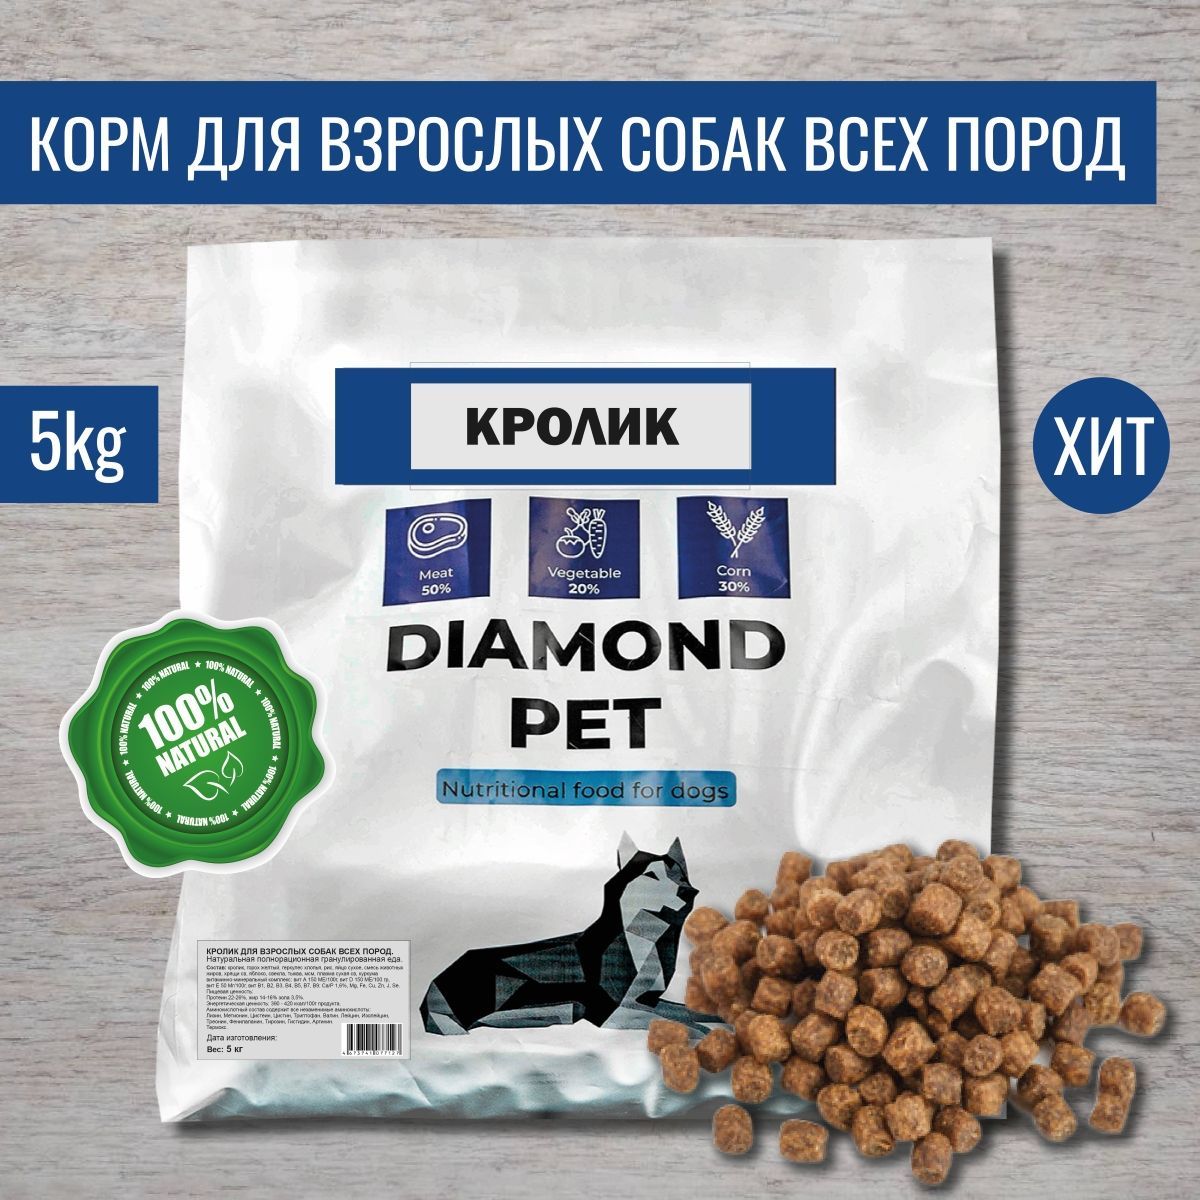 Diamond pet. Diamond Pet корм для собак.